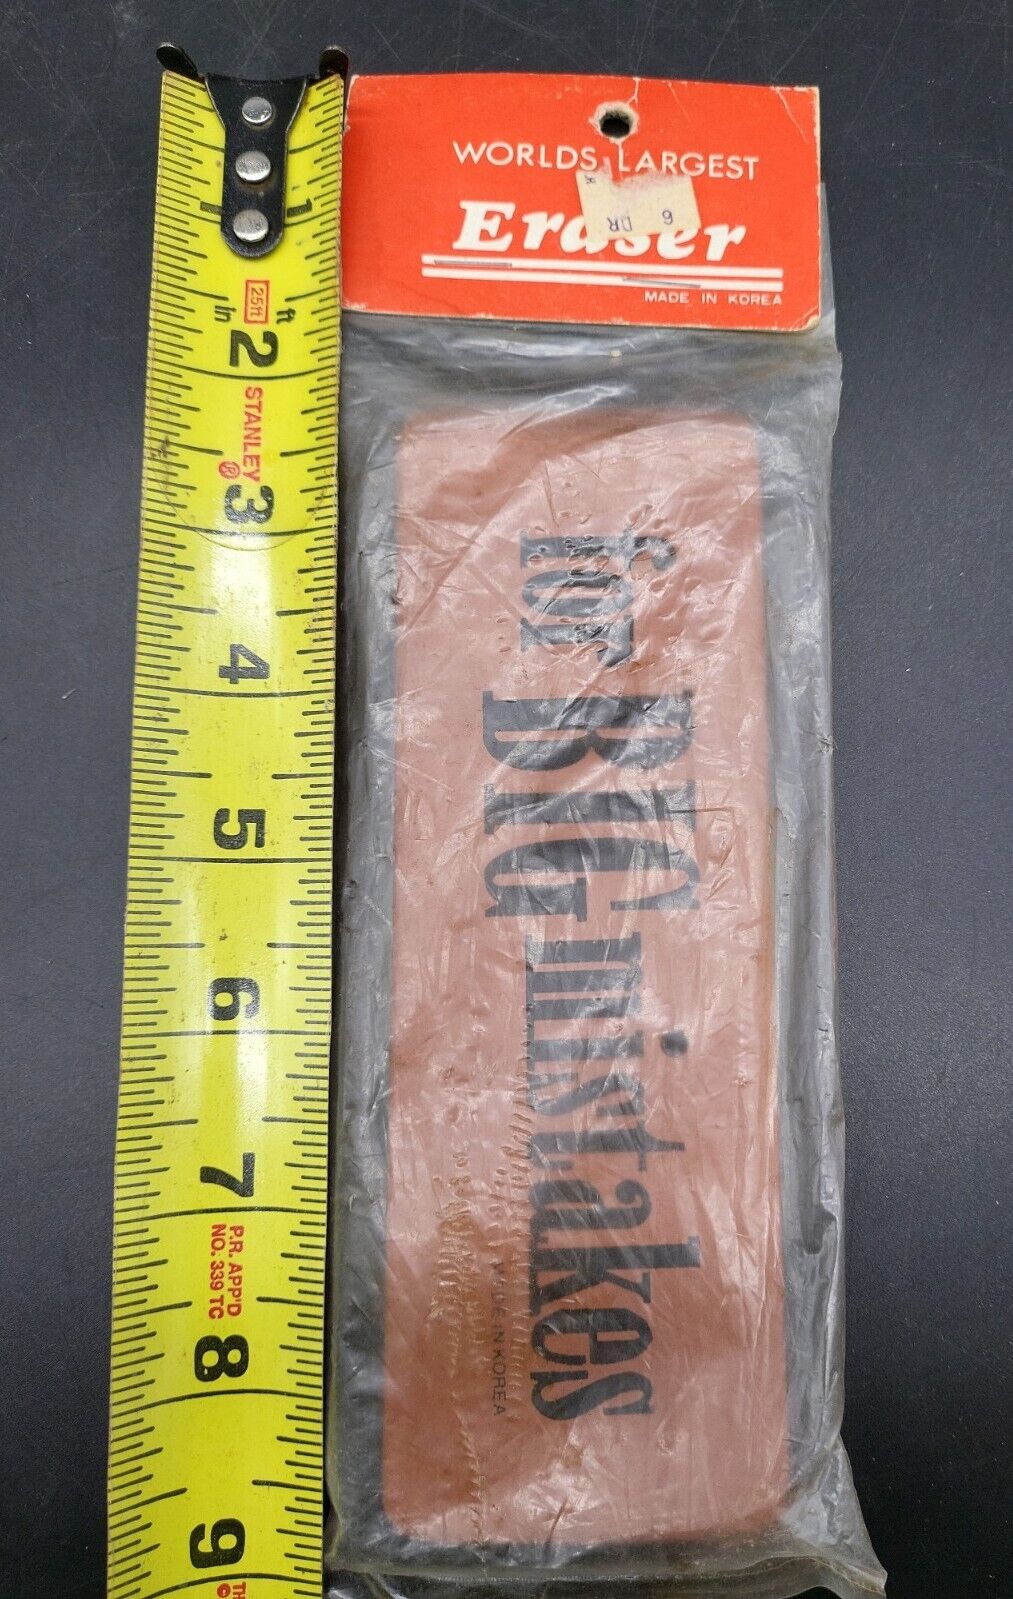 Vintage Worlds Largest Eraser For Big Mistakes Made in Korea 